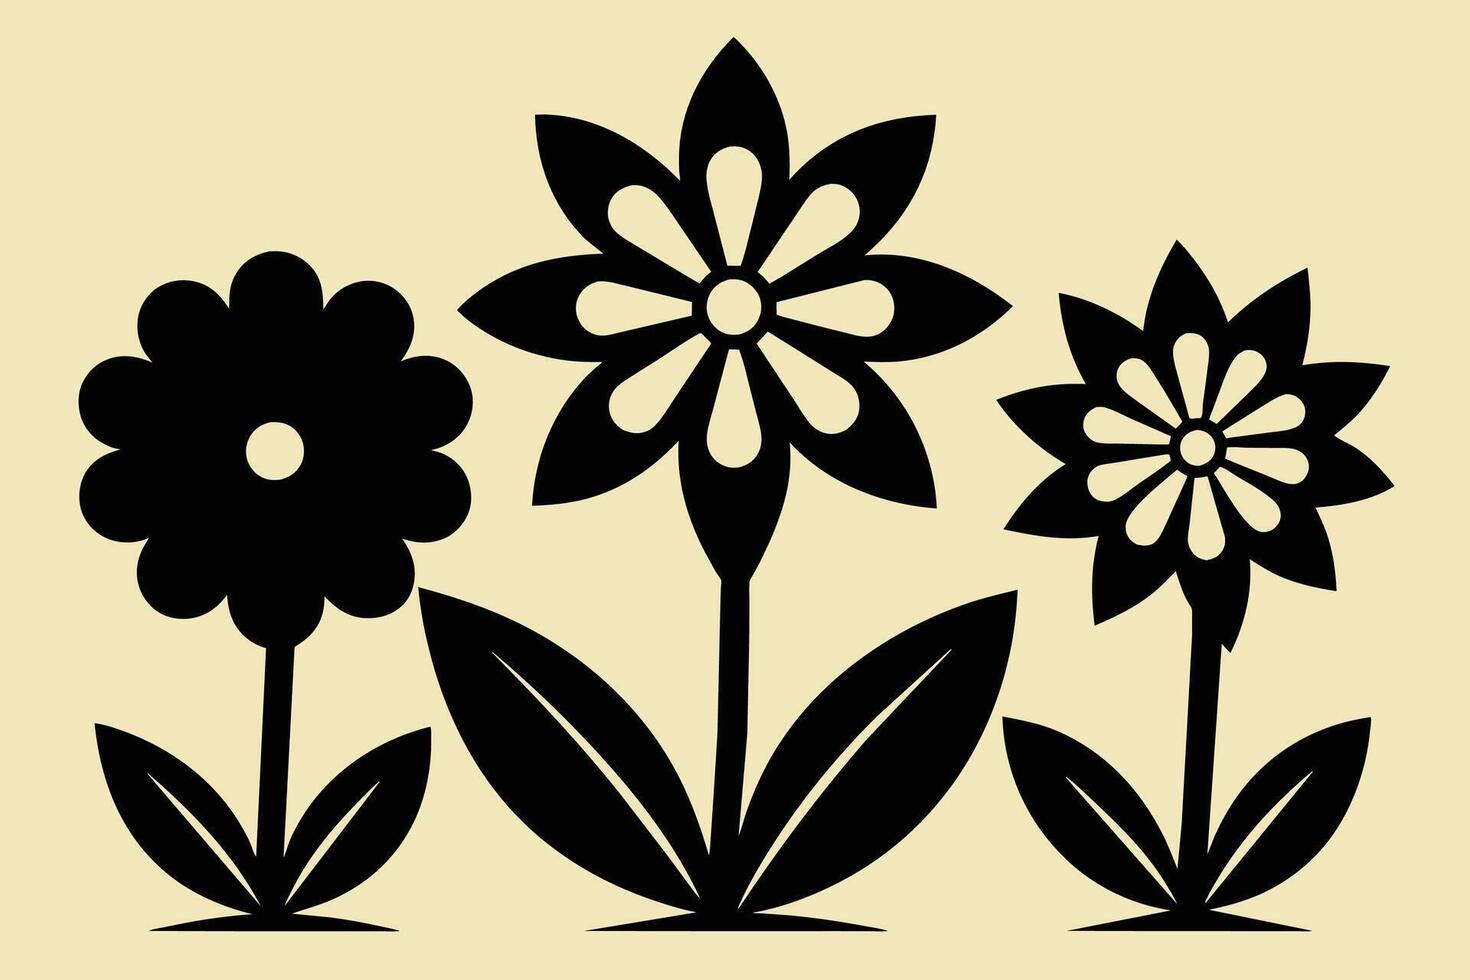 schwarz ausgeschnitten Symbole von Blumen vektor